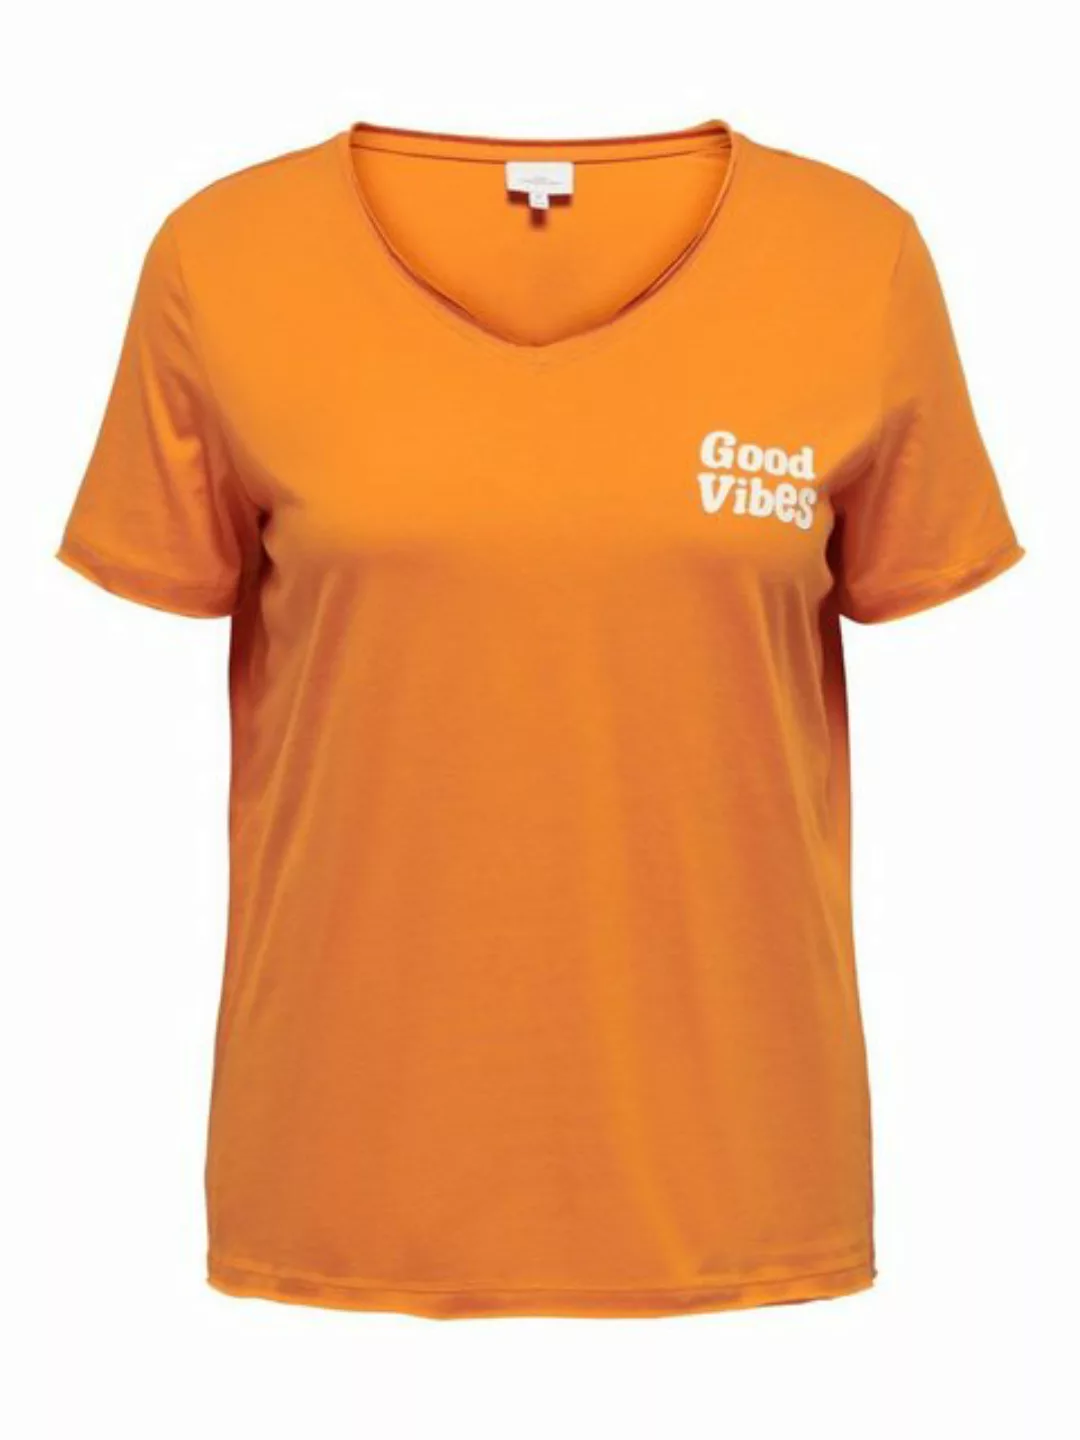 ONLY CARMAKOMA T-Shirt Bedrucktes Spruch T-Shirt Übergröße Plus Size Top CA günstig online kaufen